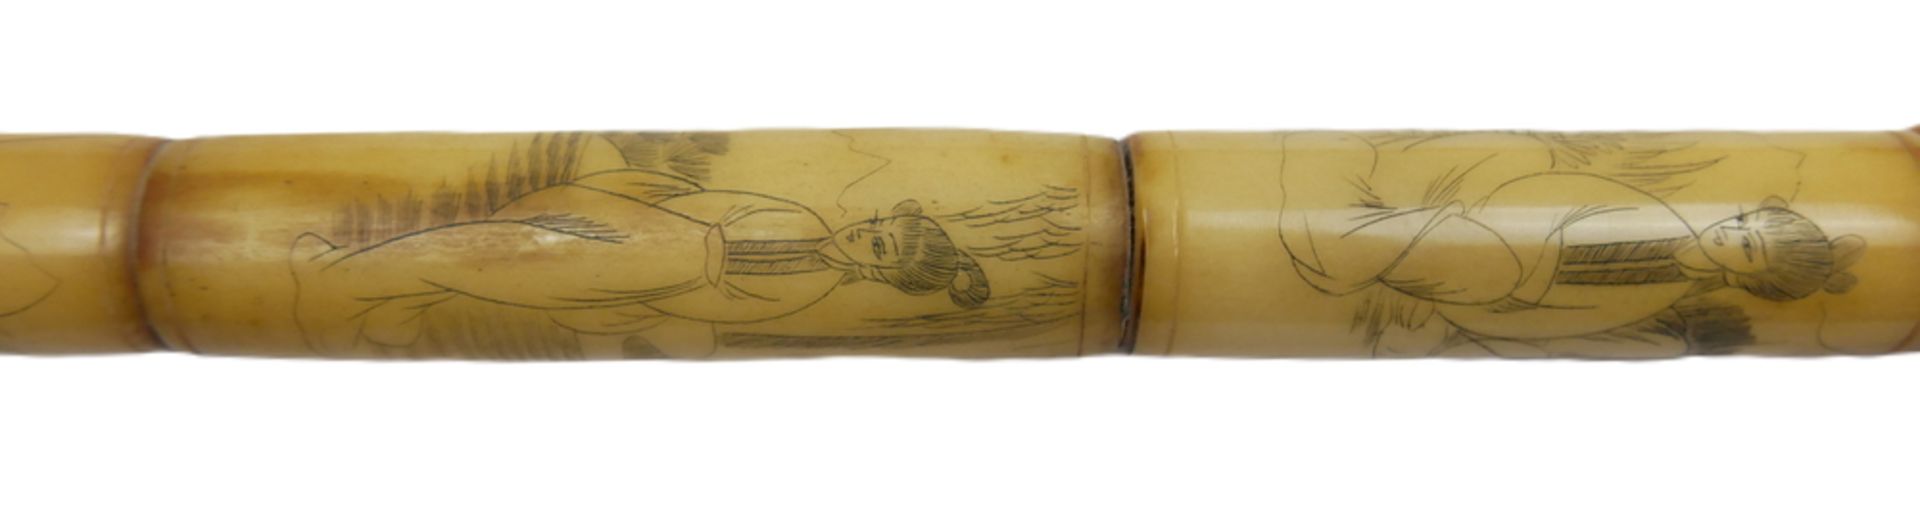 Chinesische Opiumpfeife aus Knochen, geschnitzt und verziert mit Geishas. Länge ca. 54 cm - Bild 2 aus 3